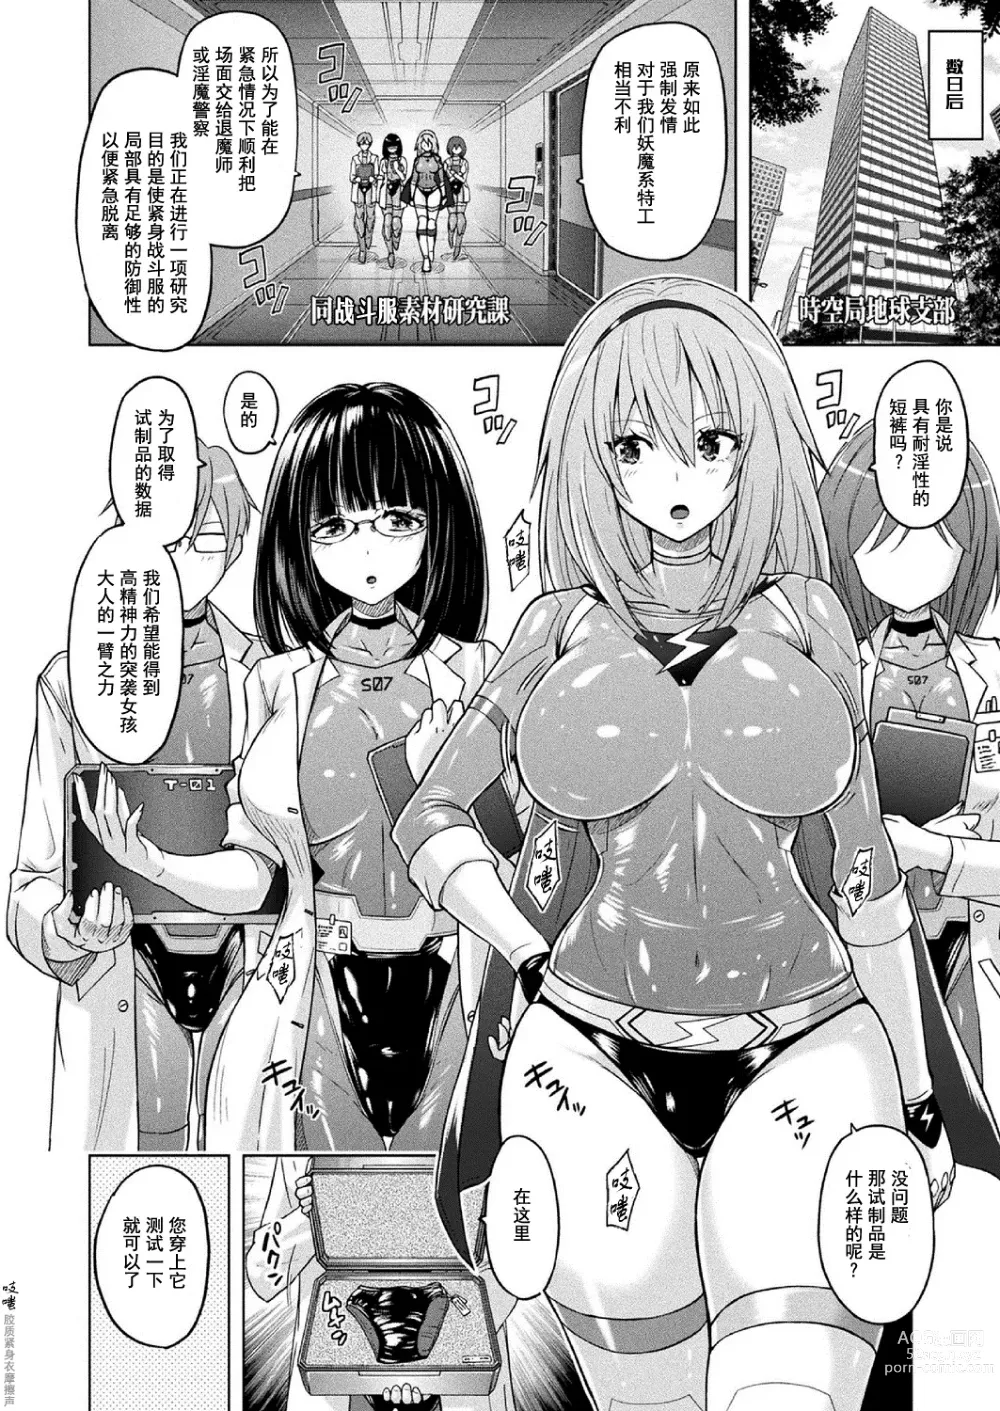 Page 3 of manga 胖次实验室 正篇+加笔【精神胡萝卜尚西·尚特耐脑控汉化】